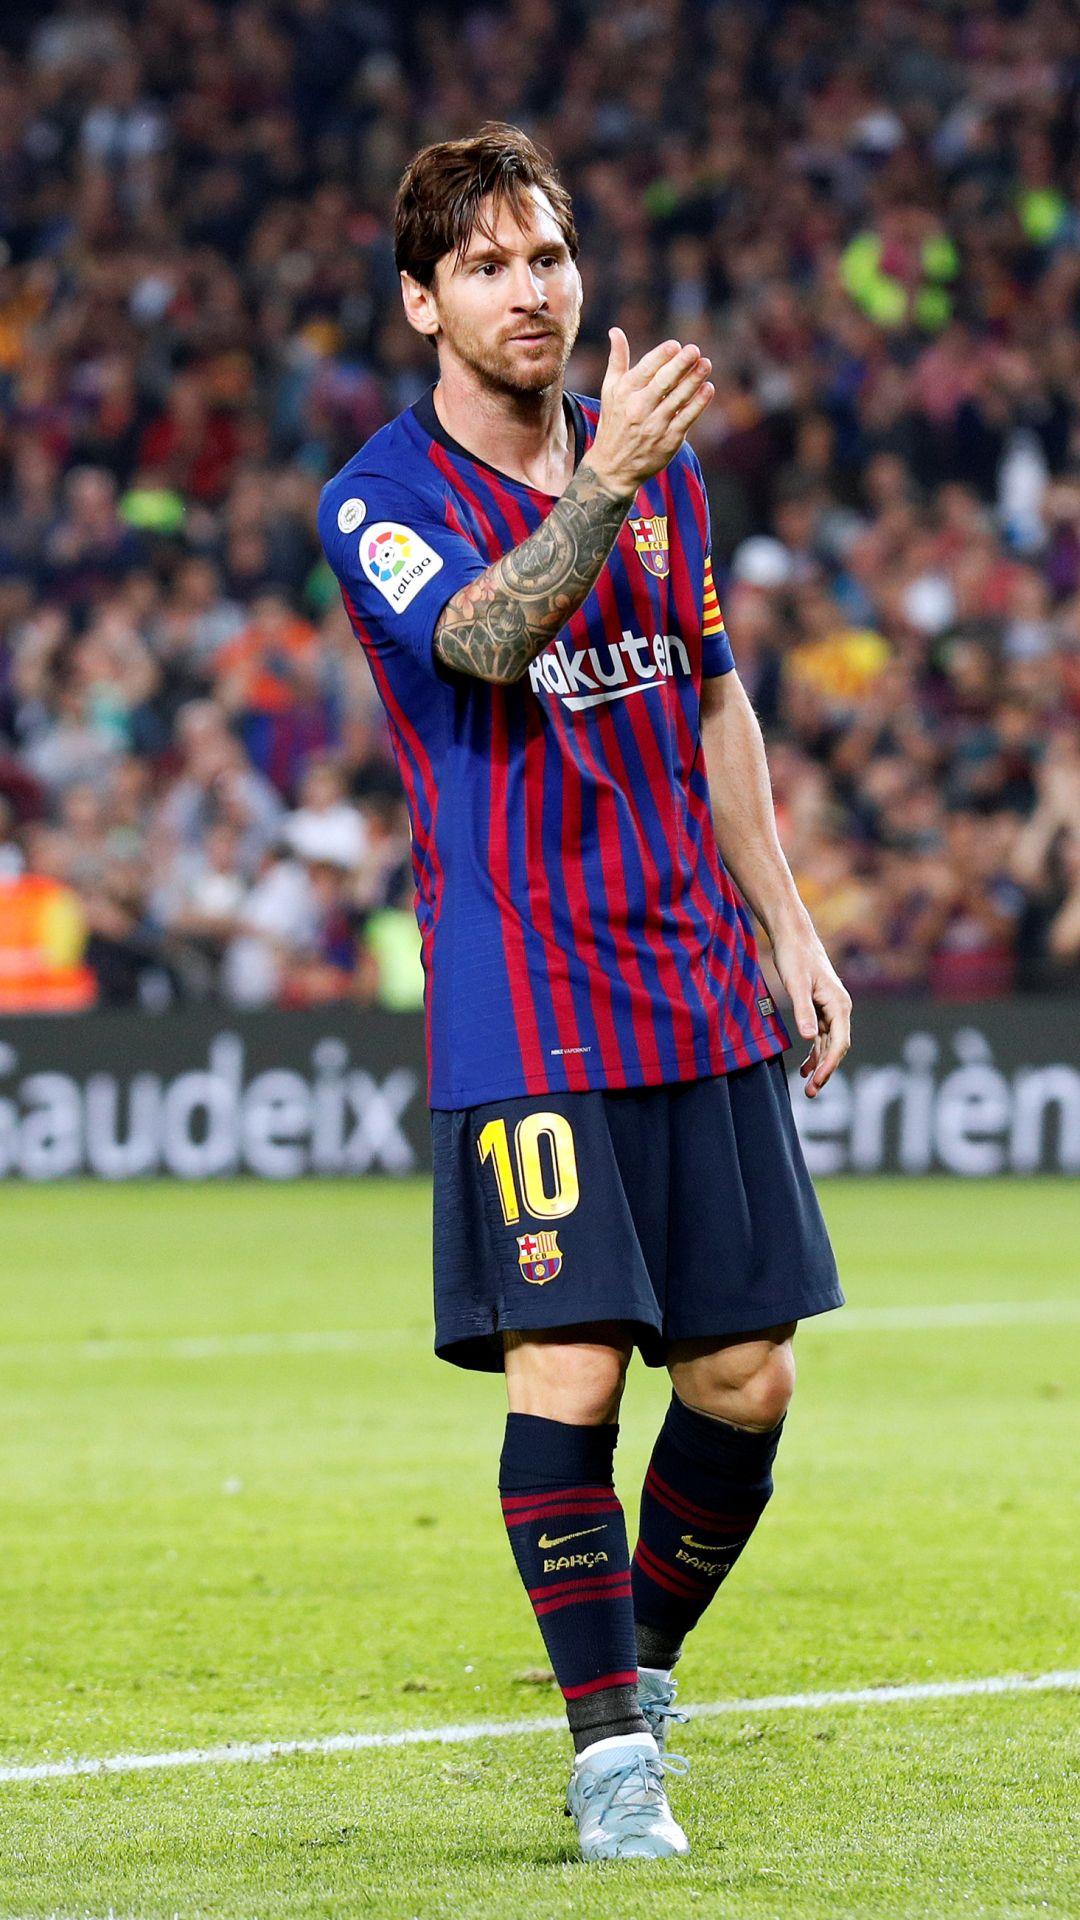 Sports / Lionel Messi (1080x1920) Mobile Wallpaper. Lionel